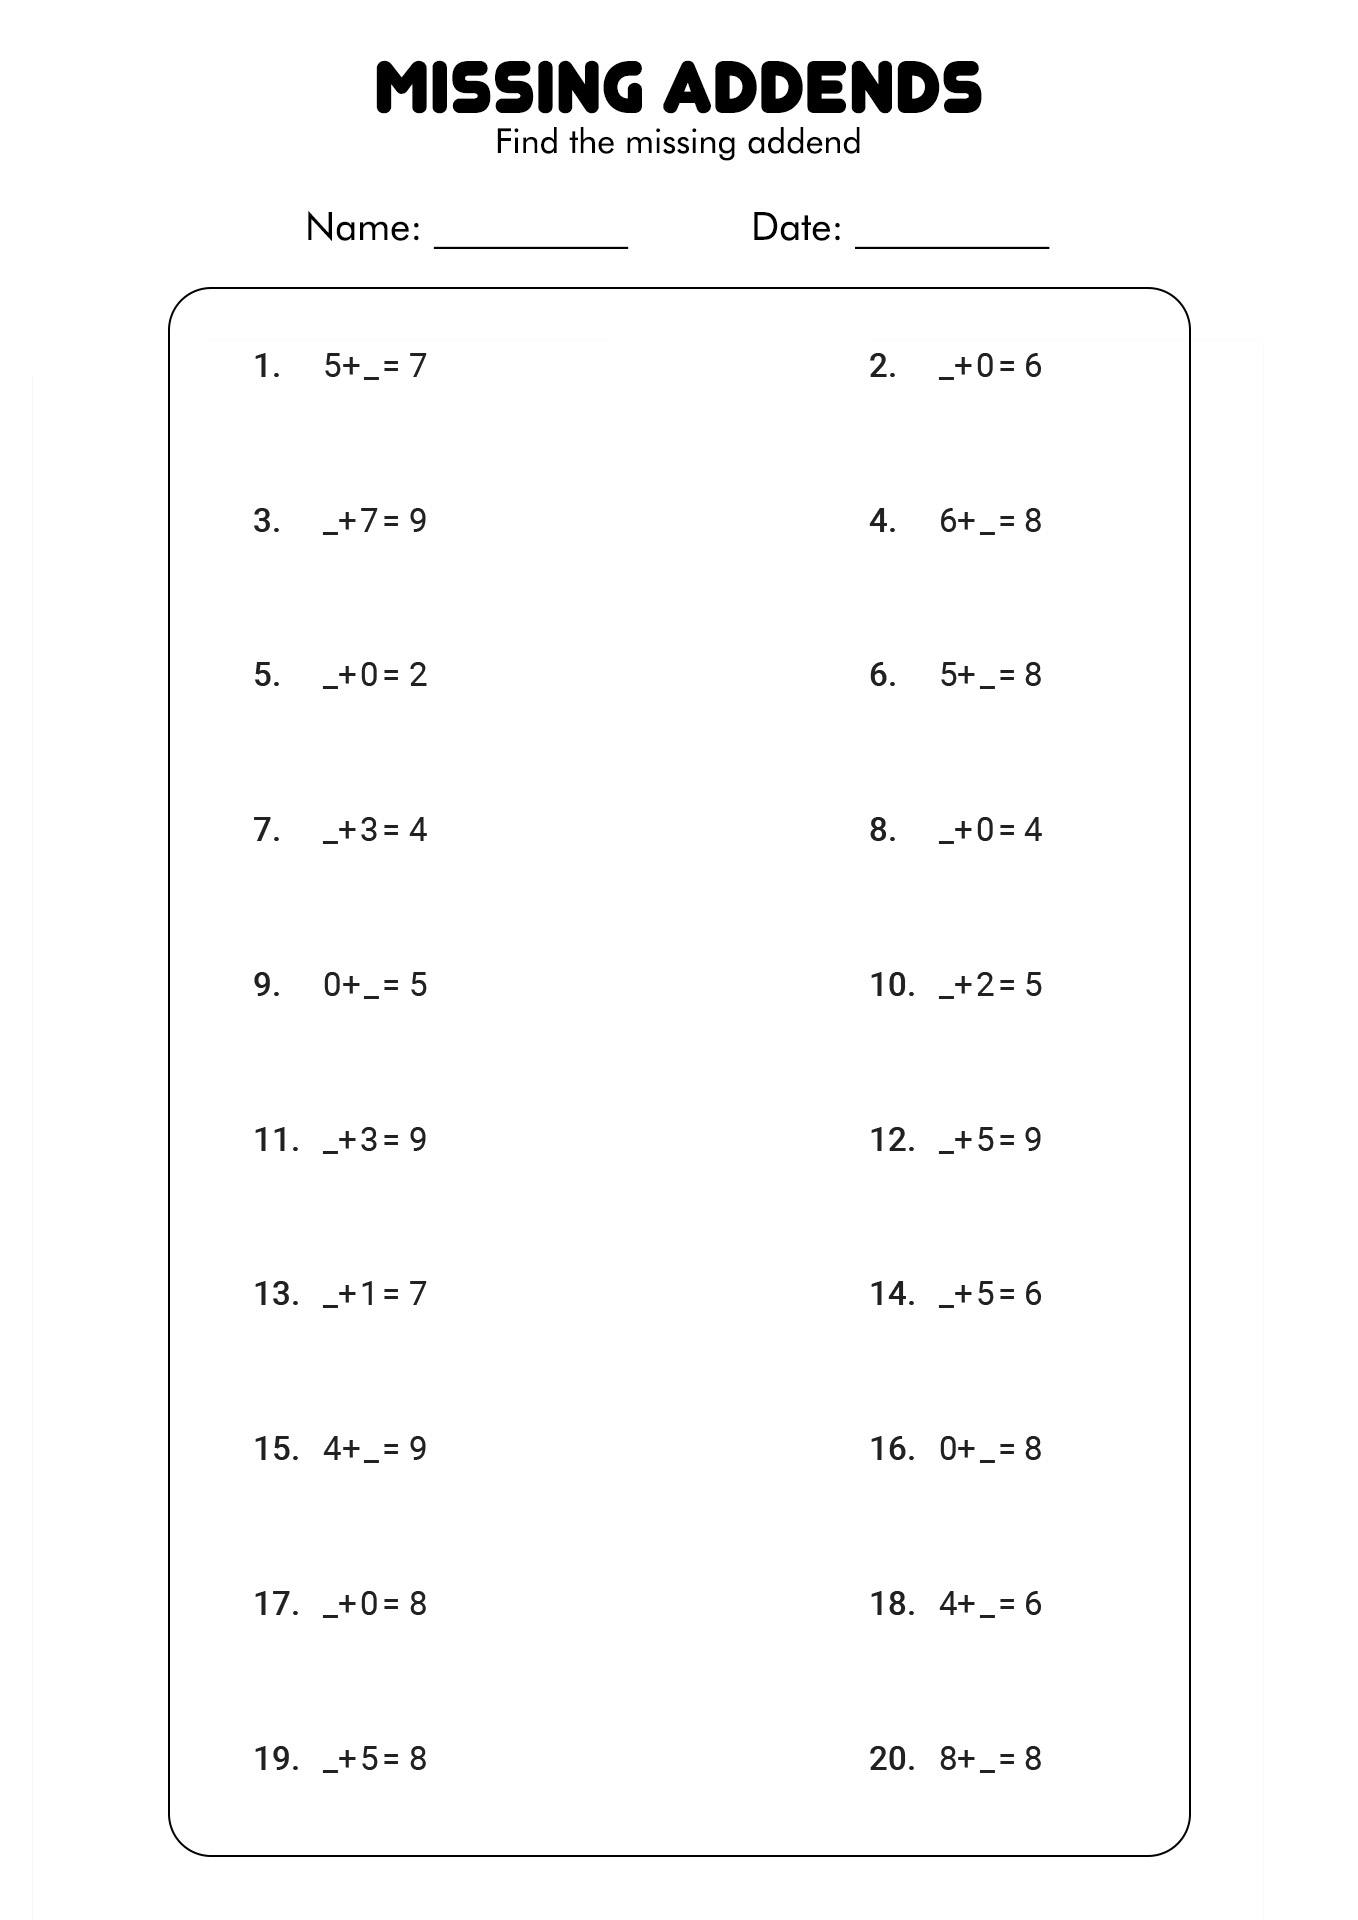 Missing Number Addition Worksheet First Grade Image